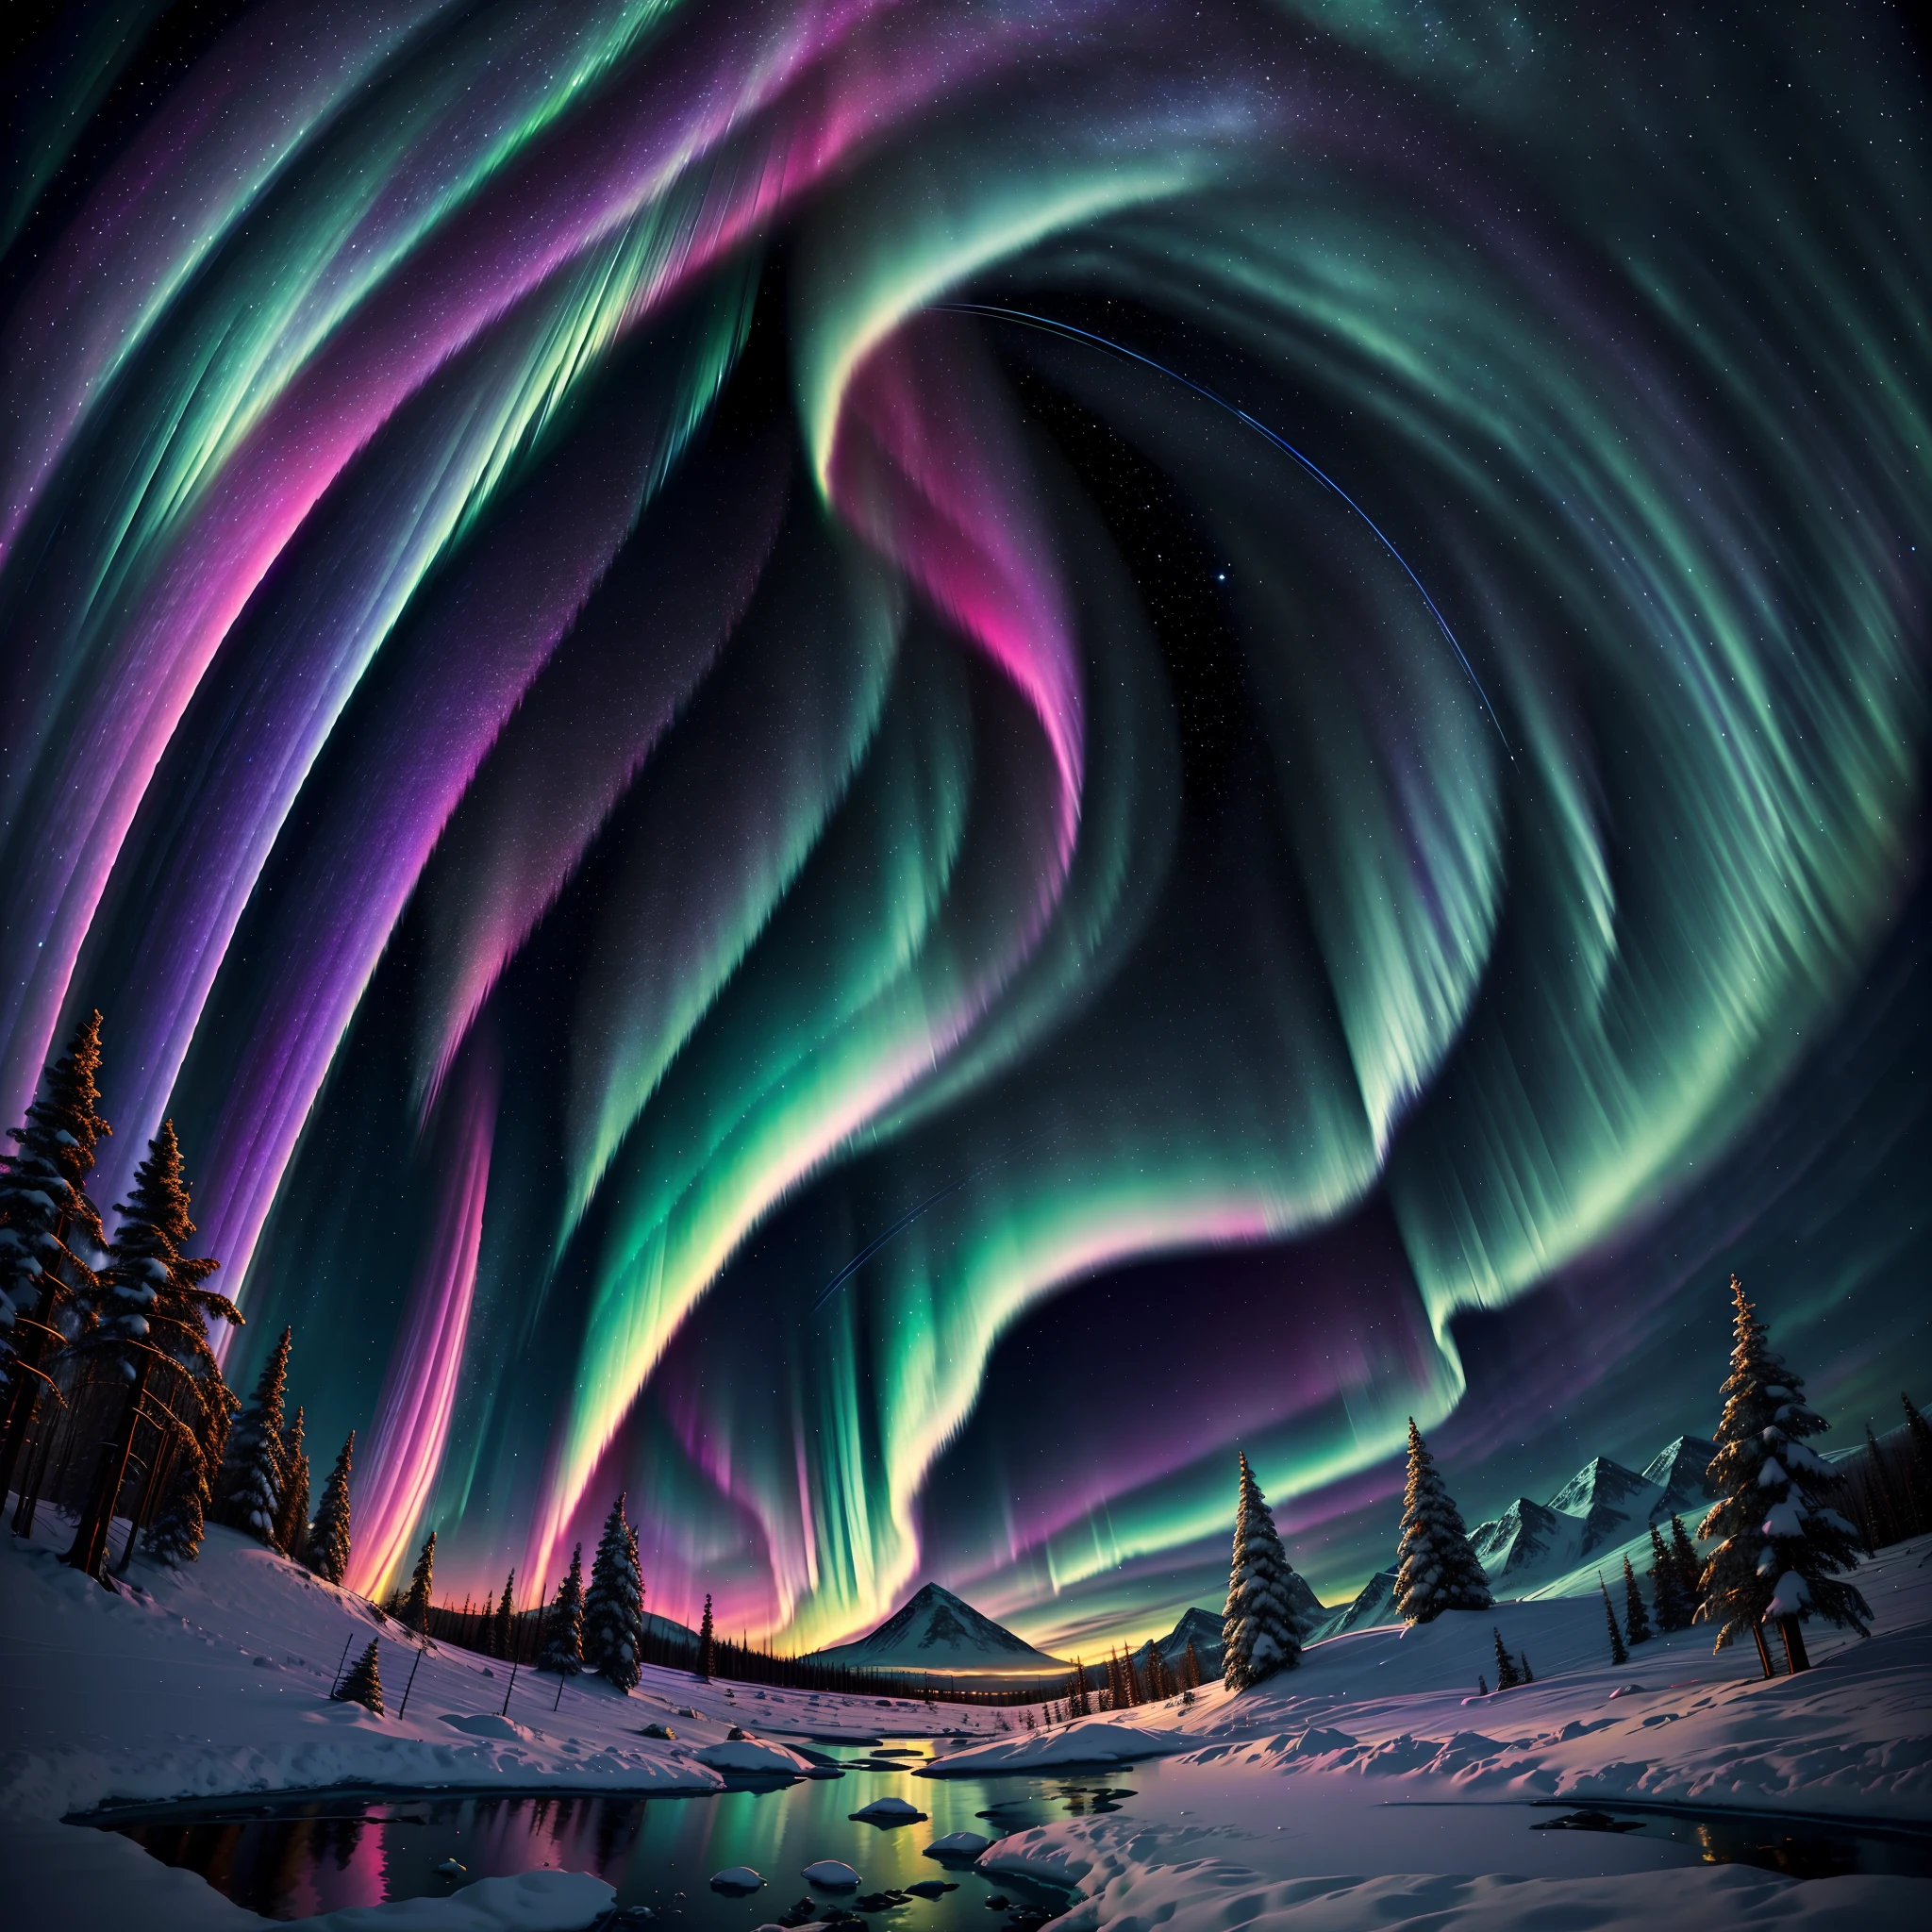 "サイケデリック, スペクトロライトスピーカーの穏やかな効果によるオーロラの抽象的な視覚化, 発光性, 北極の夜空に調和して踊る幻想的な色彩."